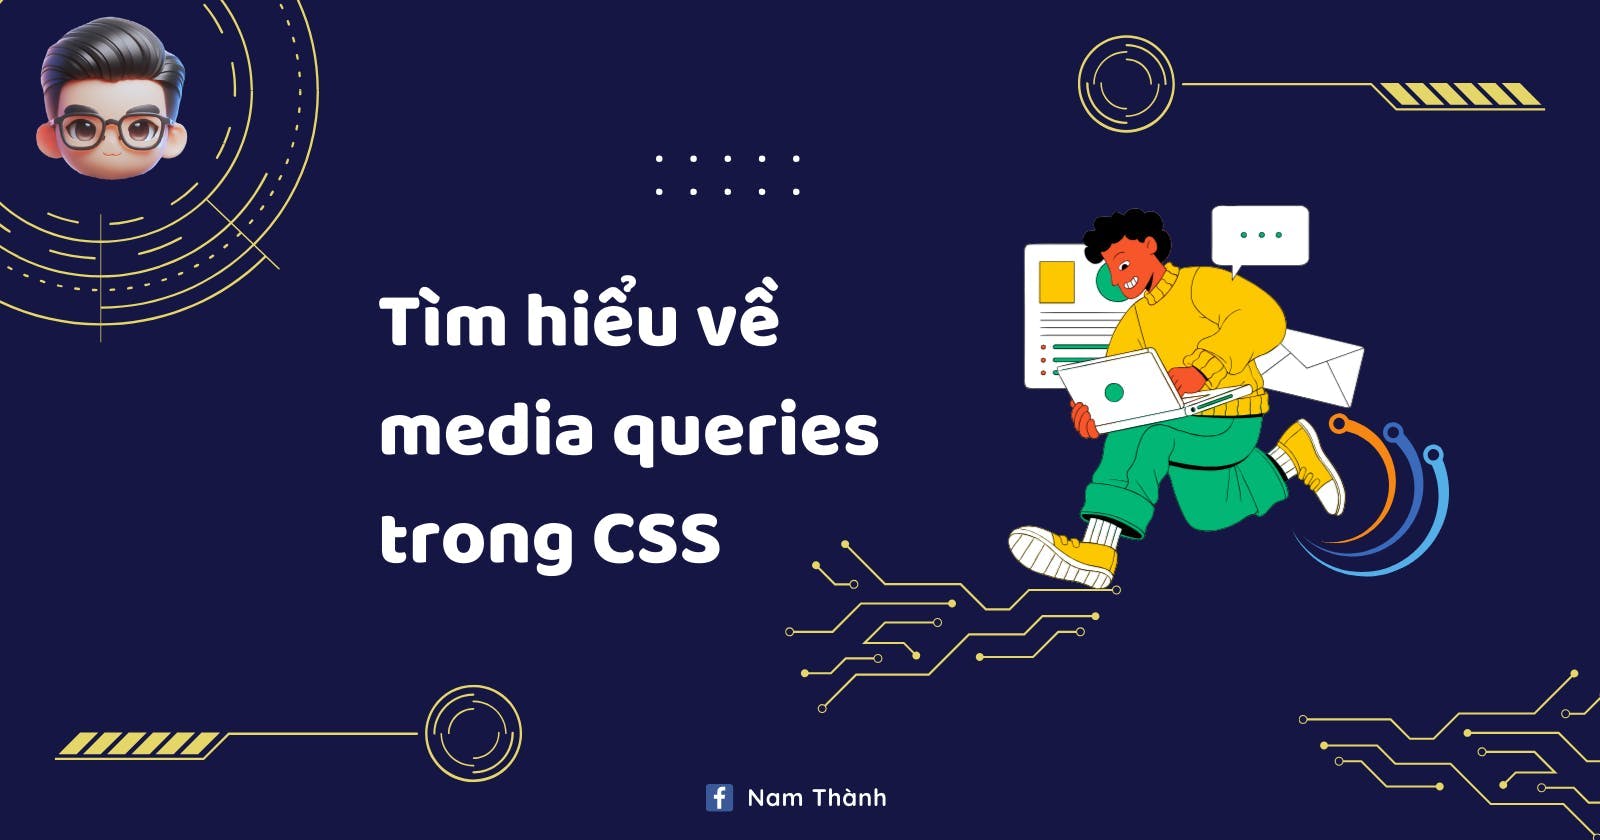 Tìm hiểu về media queries trong CSS